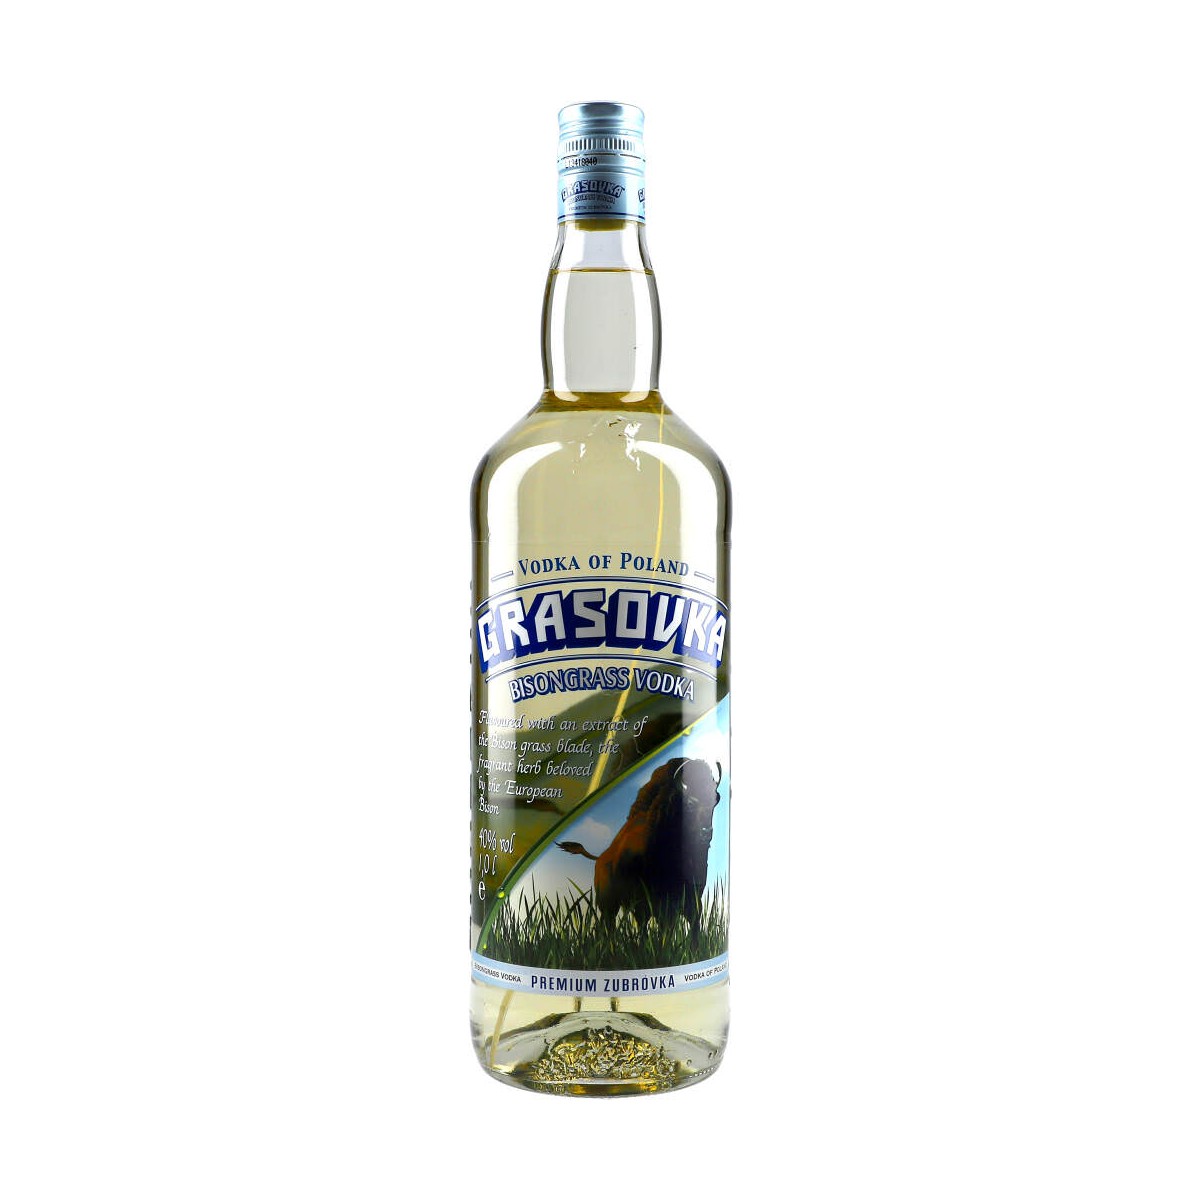 Grasovka Bisongrass Vodka 100cl 38